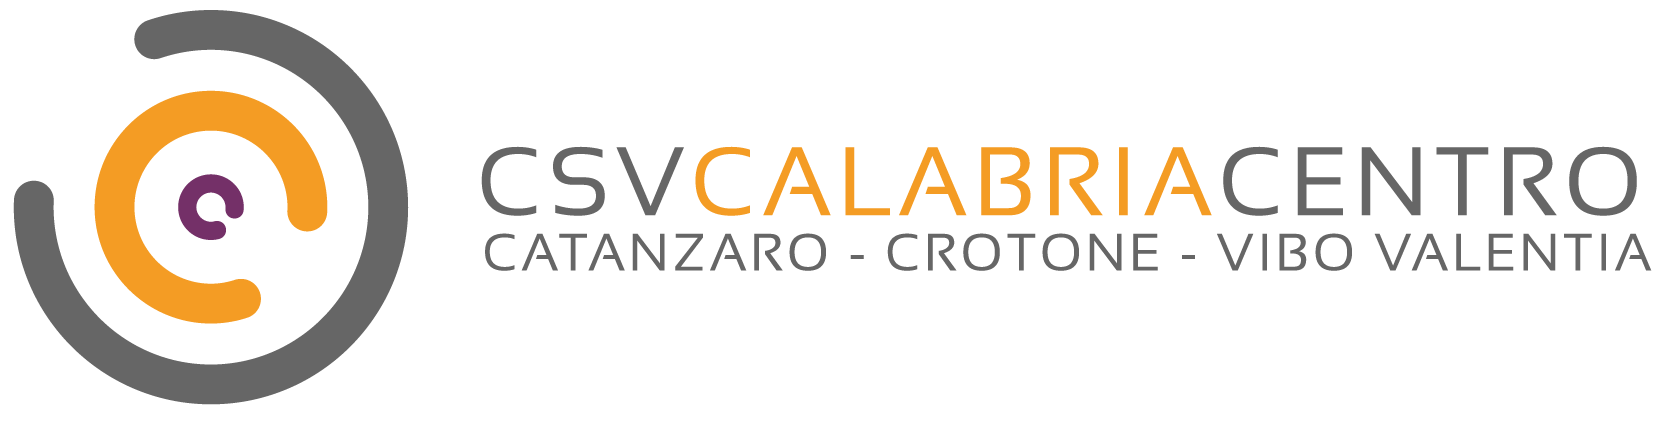 CSV Calabria Centro